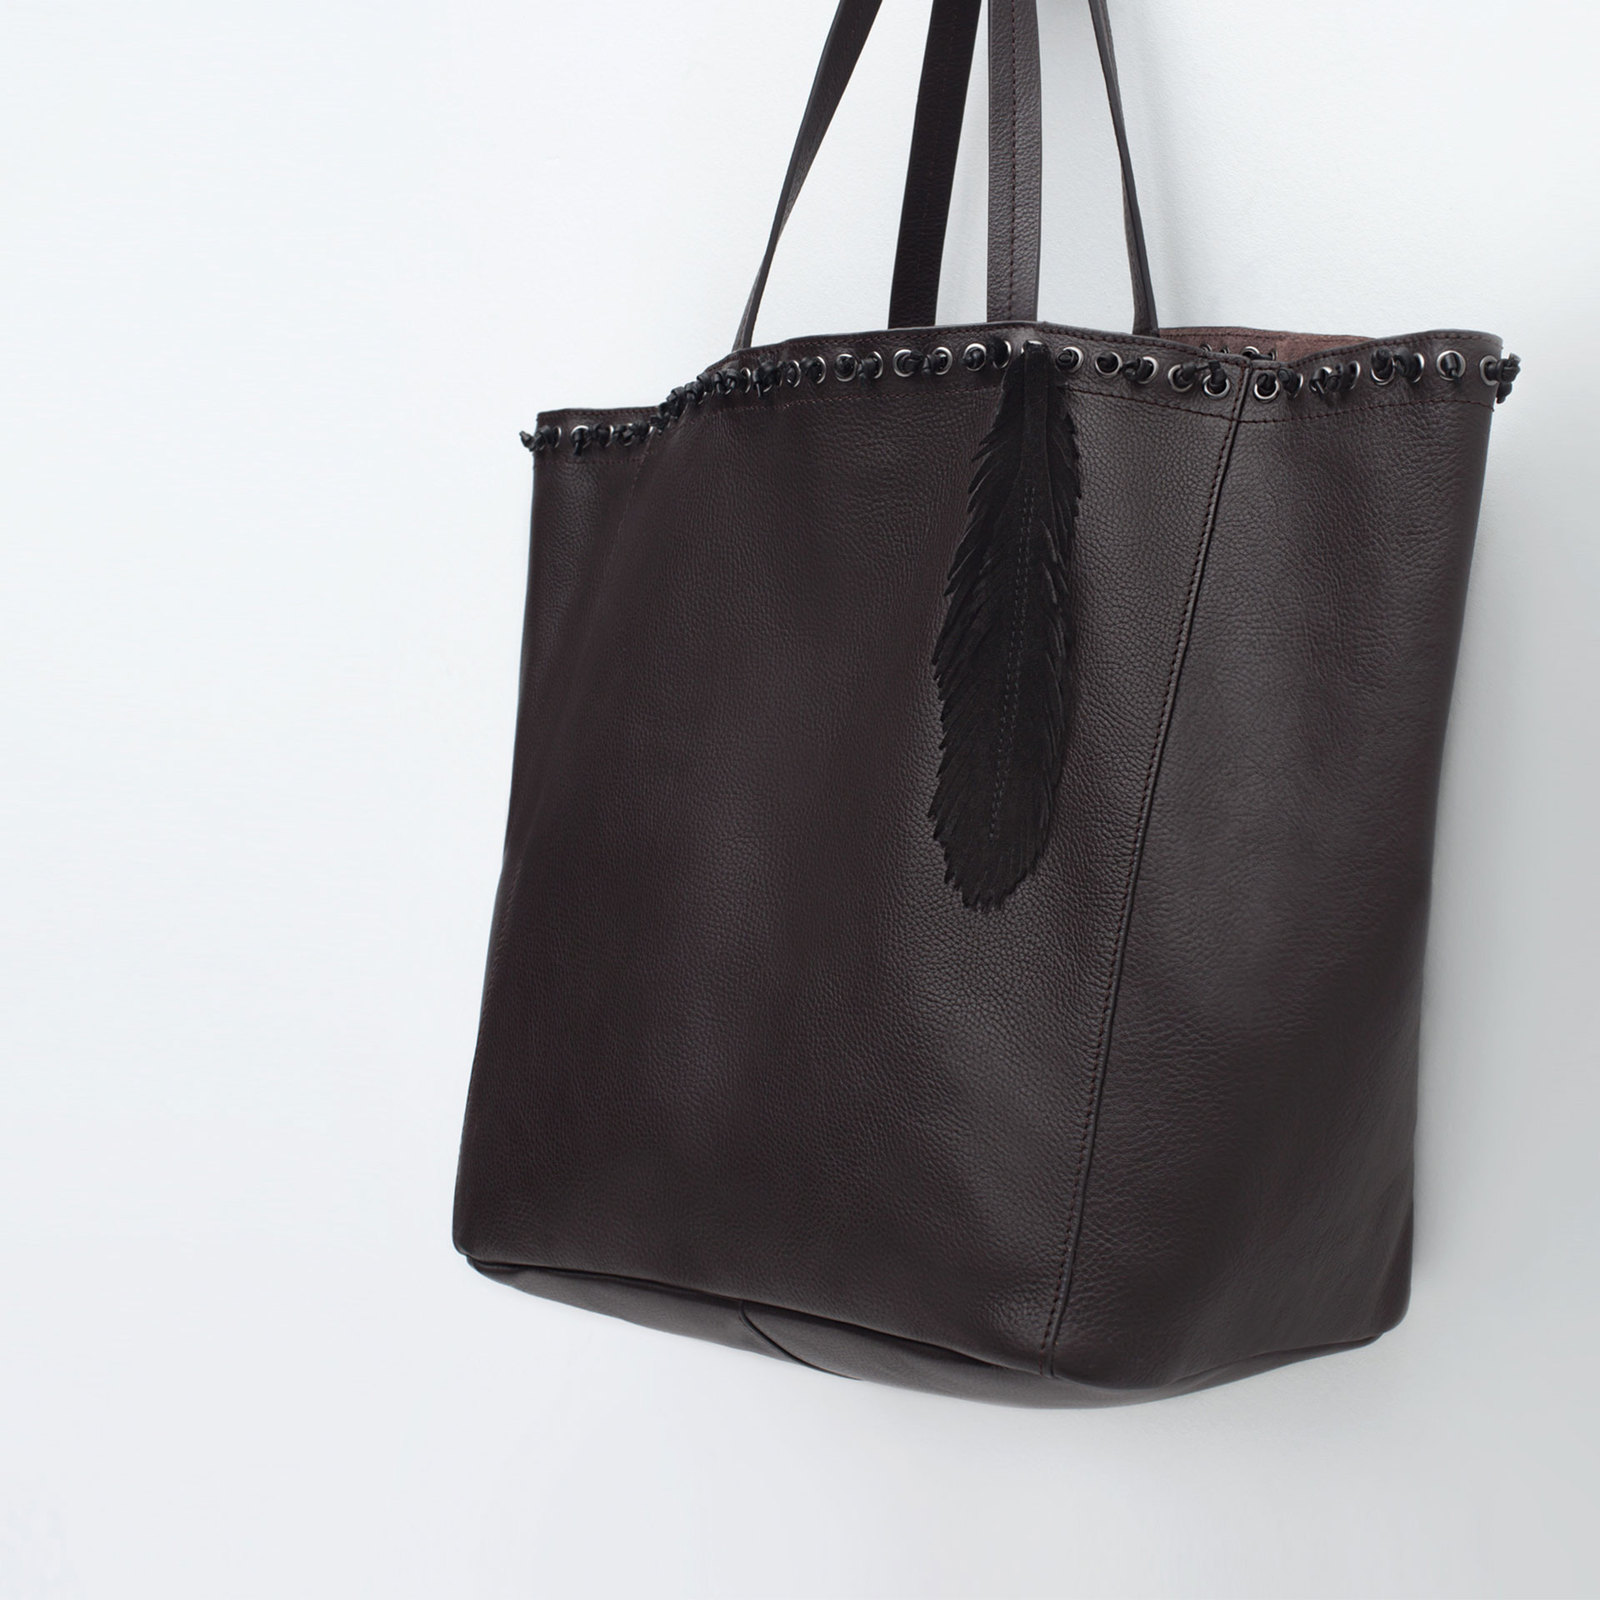 Zara csábos női fekete bevásárló táska 2015.10.15 #88752 fotója